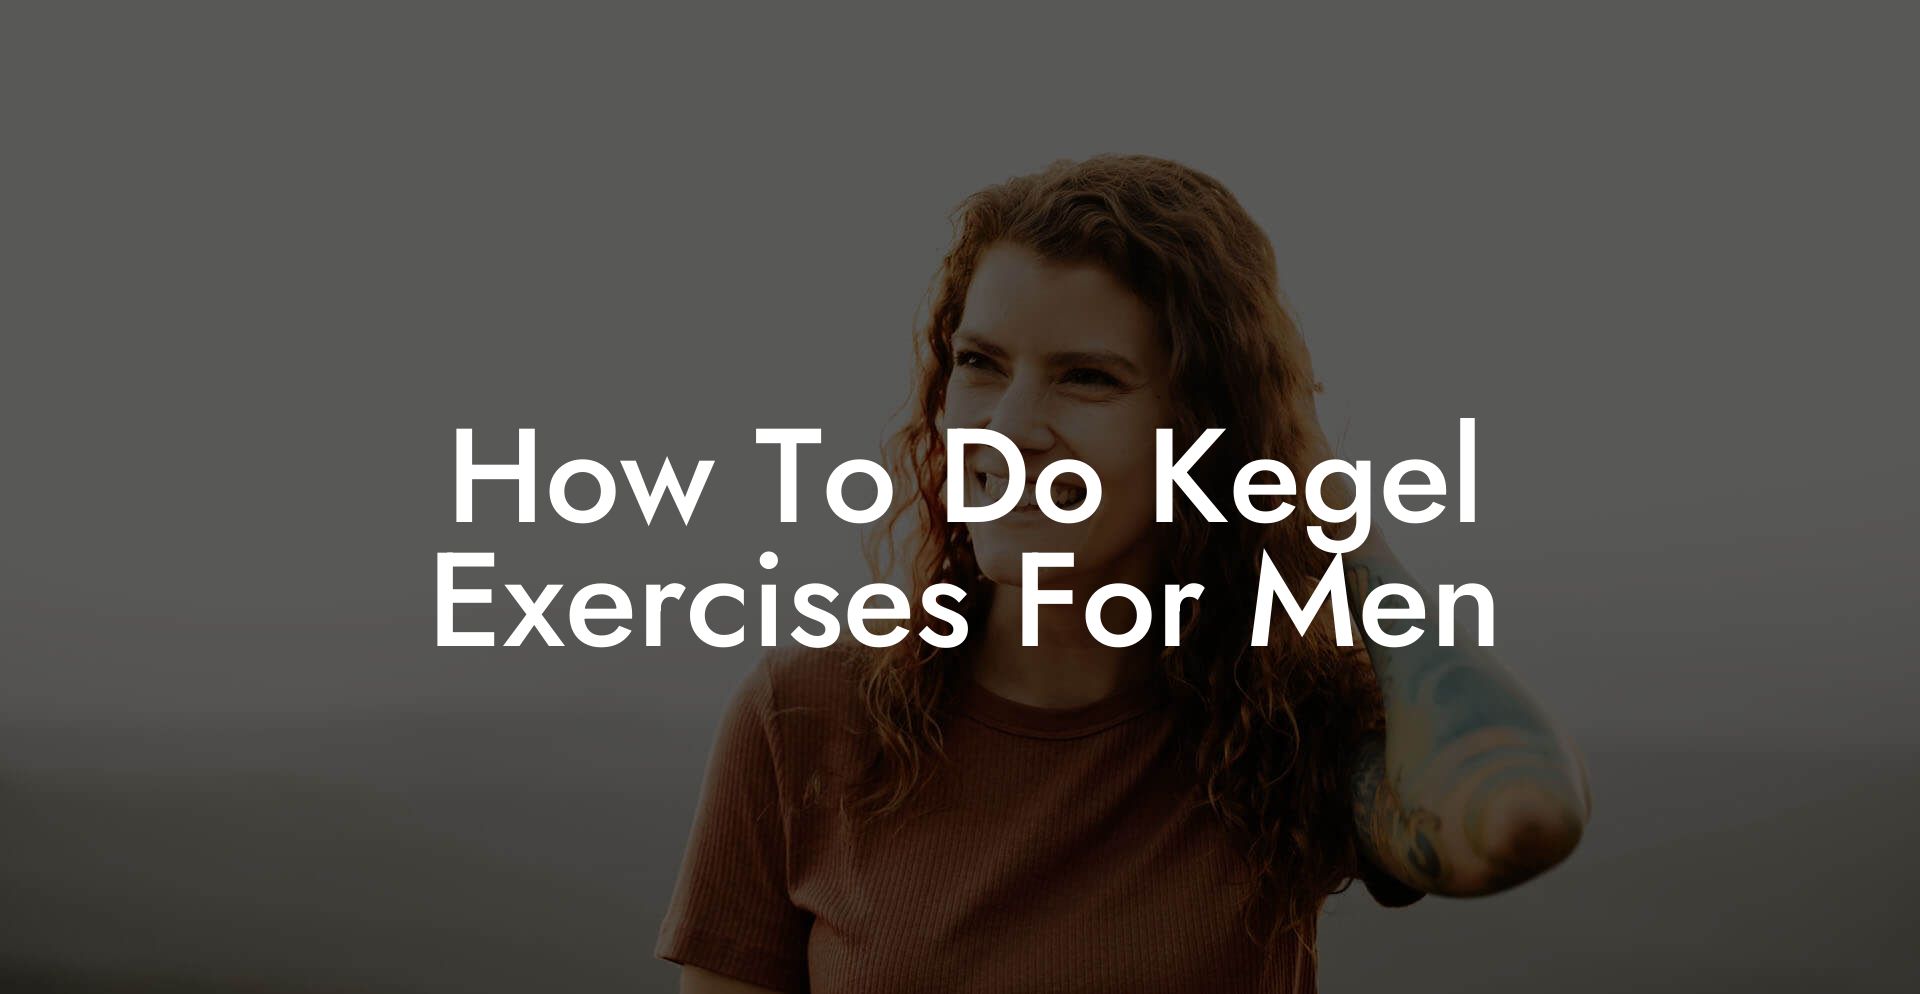 How To Do Kegel Exercises For Men